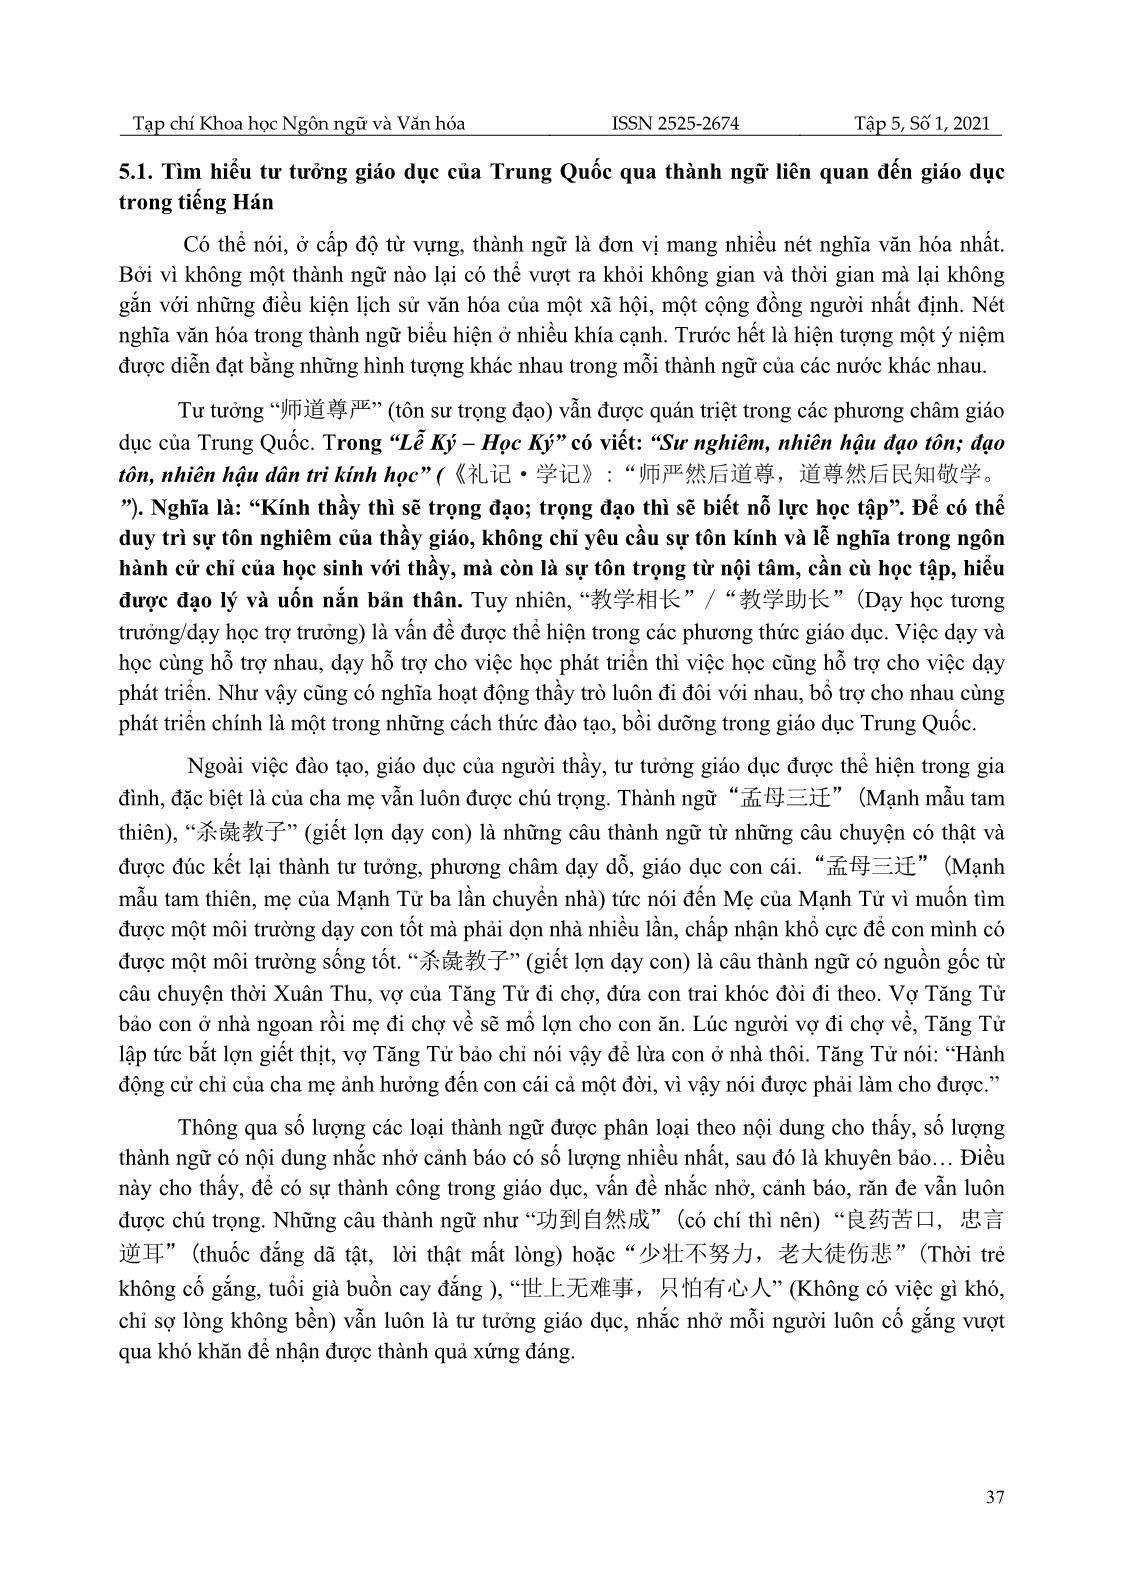 Phân tích đặc điểm thành ngữ liên quan đến giáo dục trong tiếng Hán trang 8